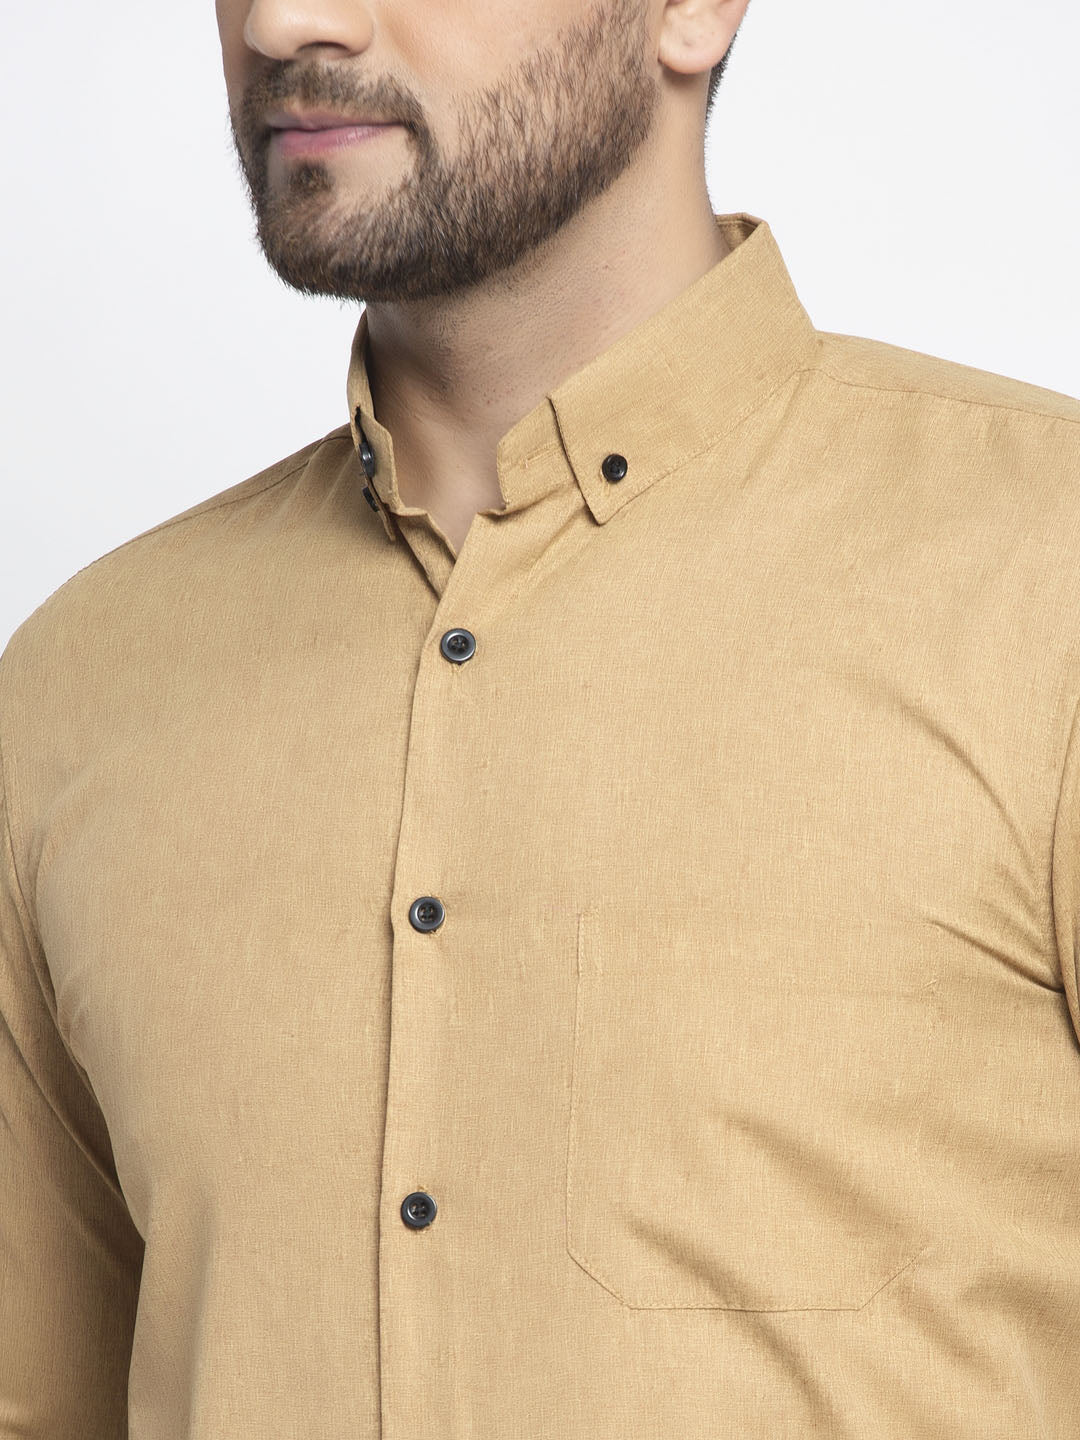 Men's Beige Cotton Solid Button Down Formal Shirts ( SF 734Beige ) - Jainish